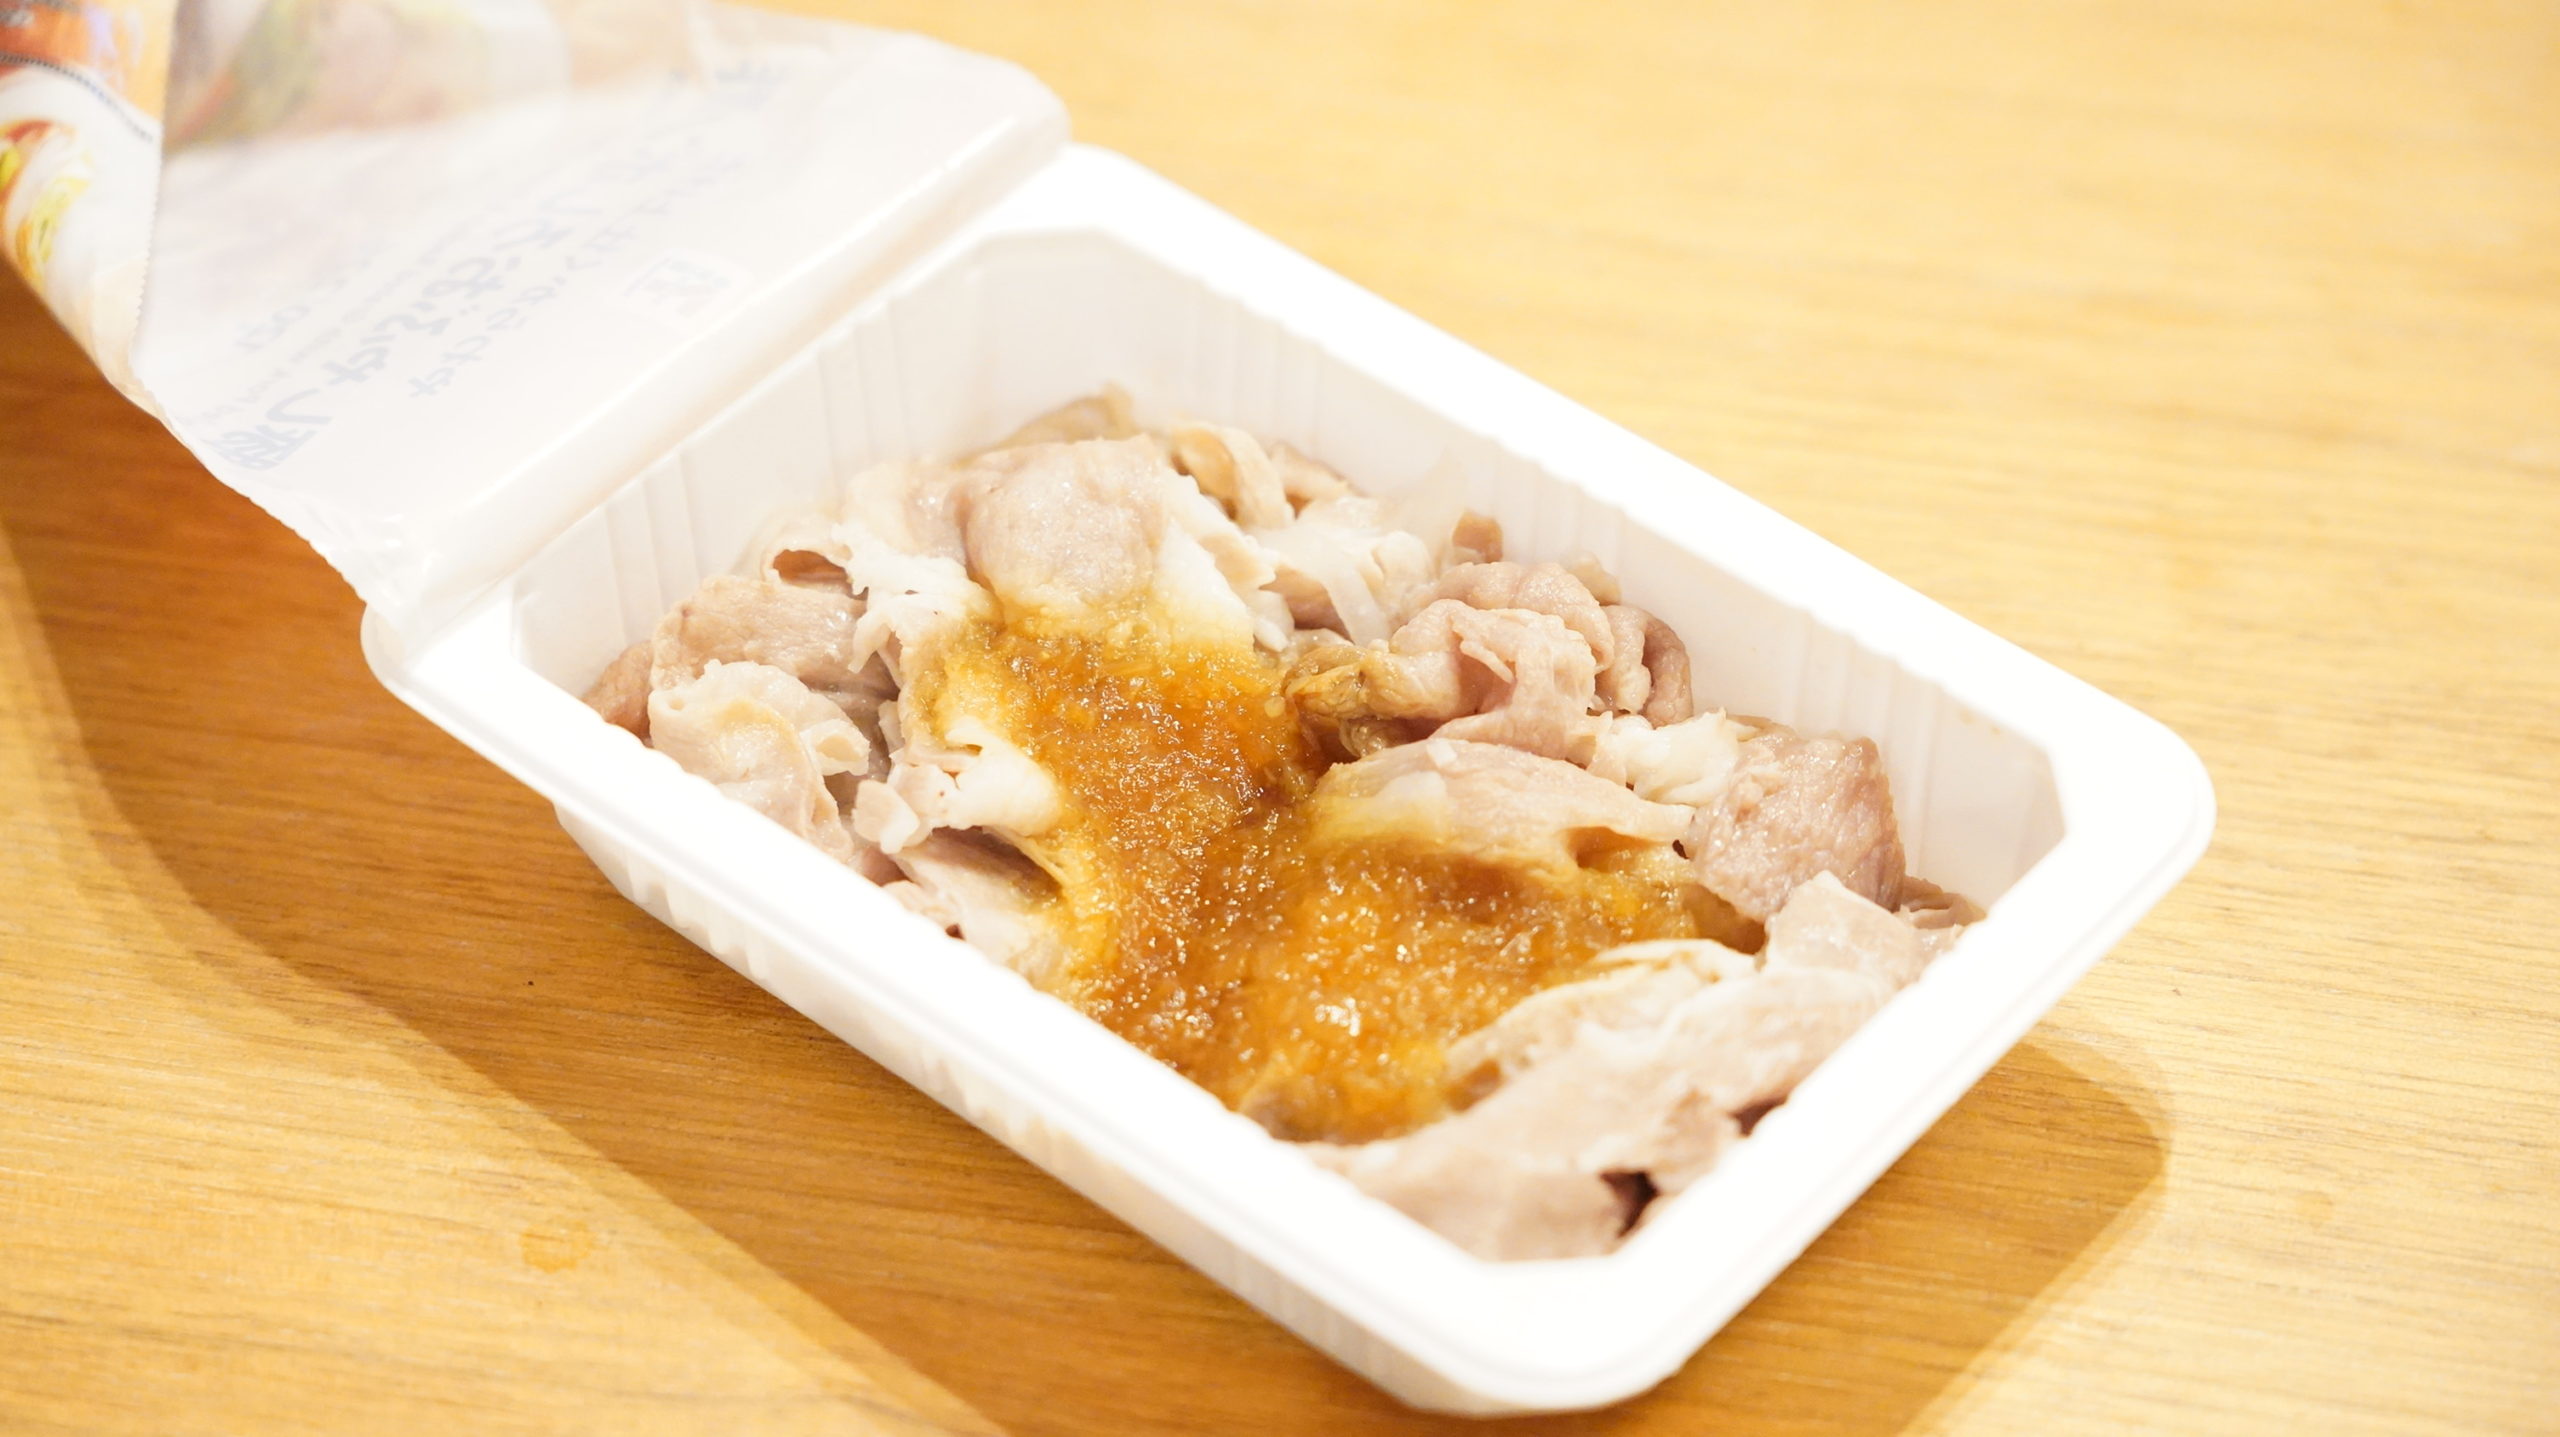 セブンイレブンの冷凍食品「やわらかく仕上げた豚しゃぶおろしポン酢」のパッケージ内部の写真